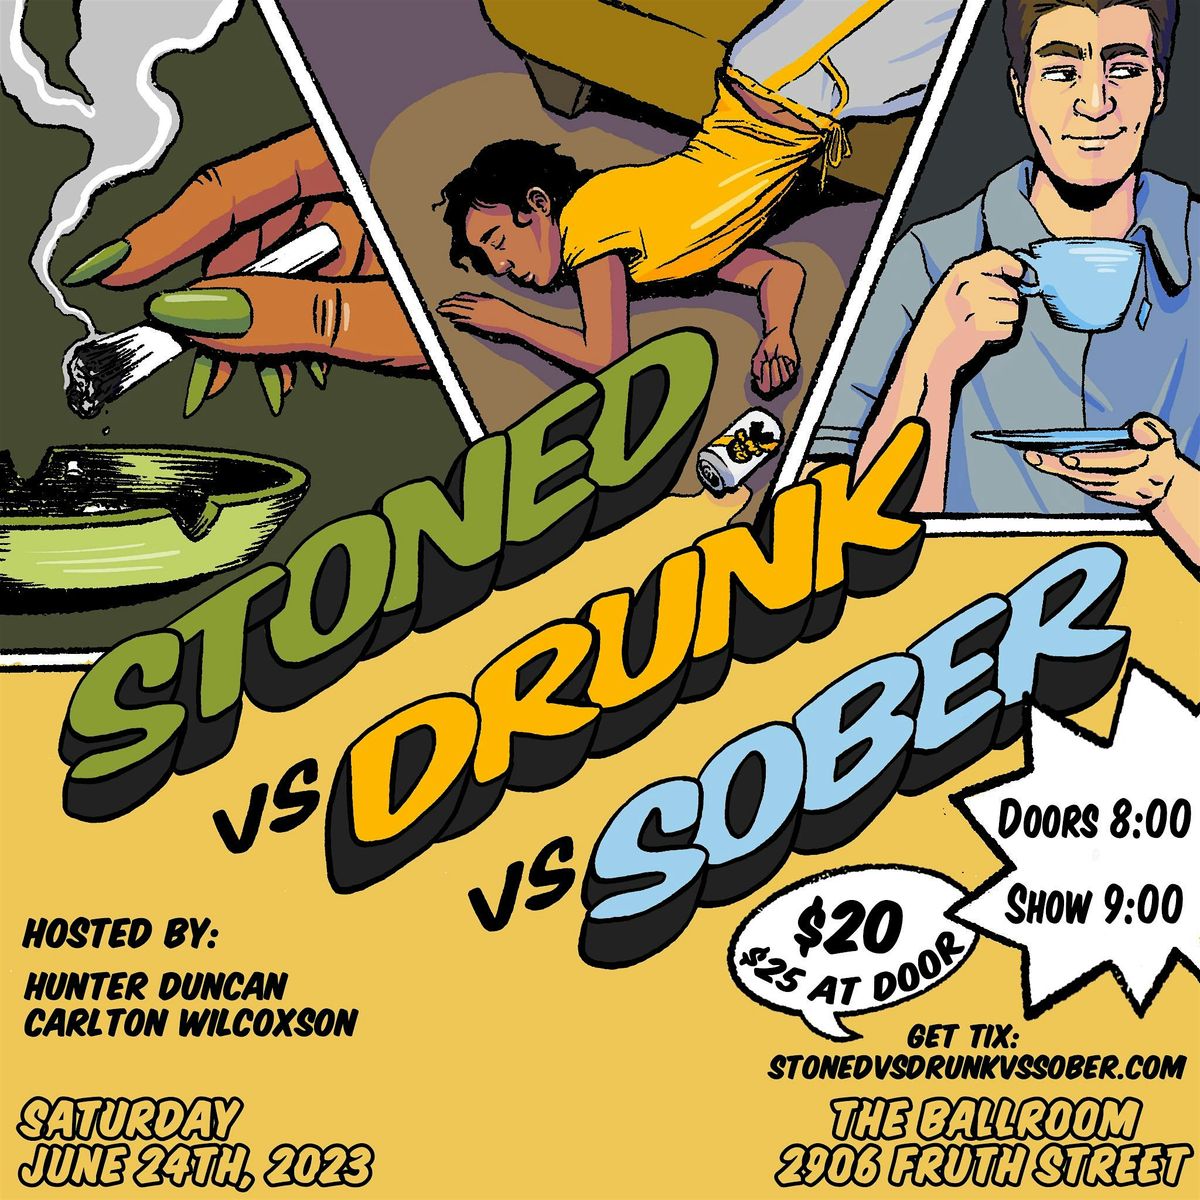 Stoned vs Drunk vs Sober: SEPTEMBER CLASH!